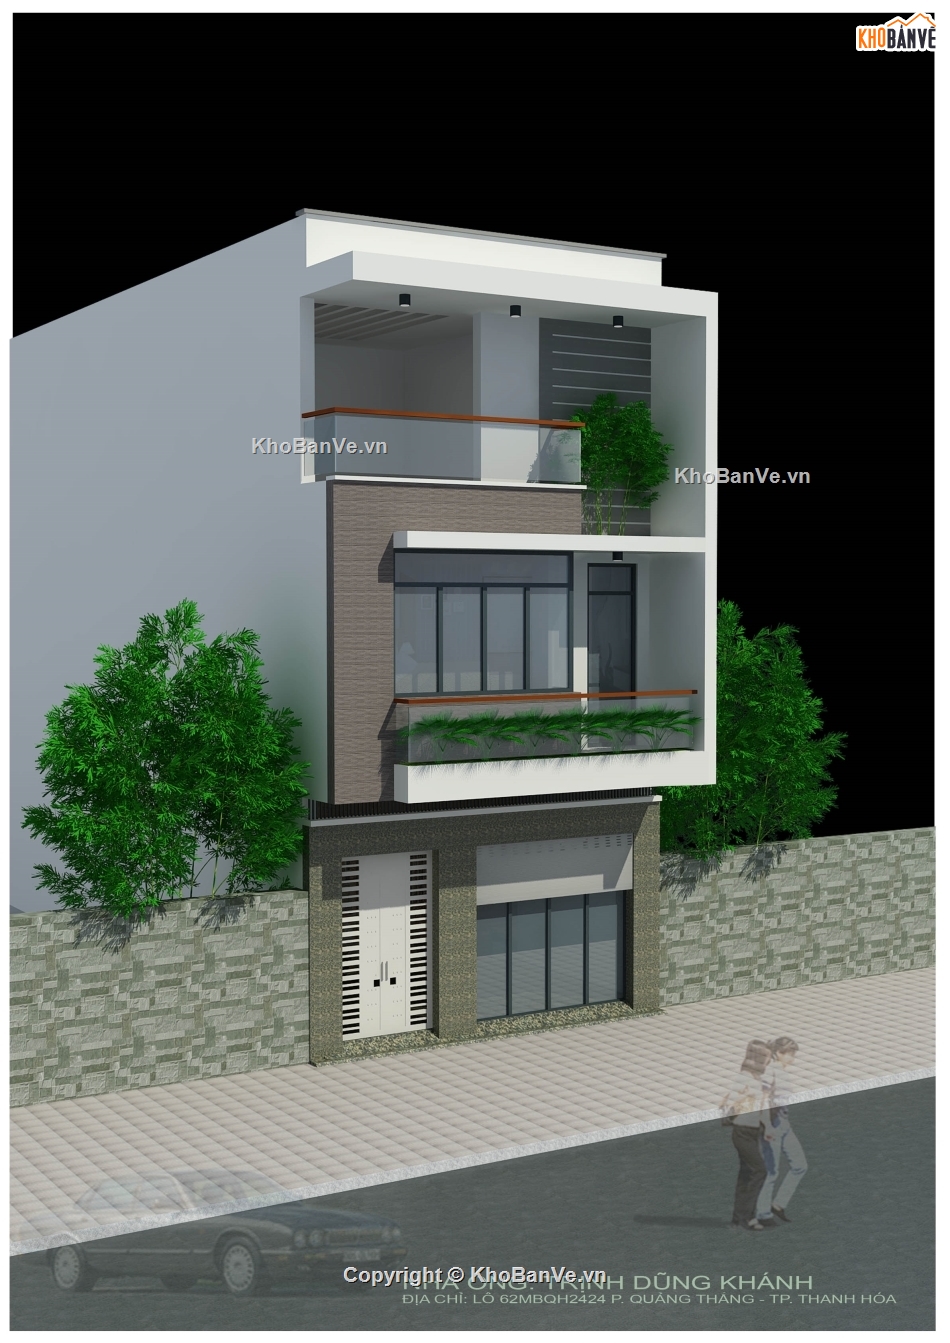 nhà phố 3 tầng,kiến trúc 3 tầng,bản vẽ nhà phố 3 tầng,autocad nhà phố 3 tầng,bản vẽ nhà 3 tầng